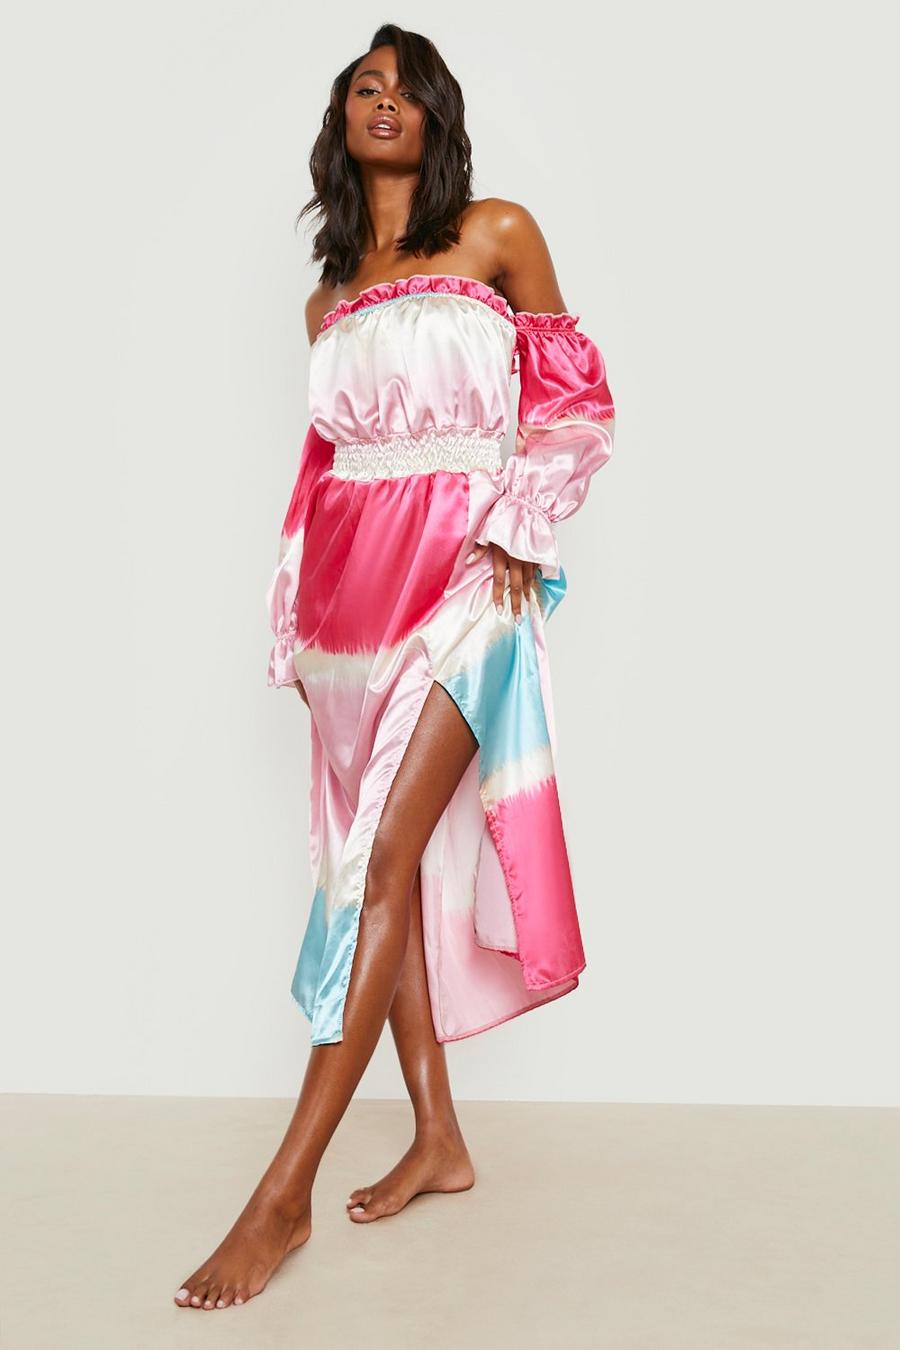 ורוד rosa שמלת חוף ברדו מסאטן באורך מידי עם הדפס וכיווצים